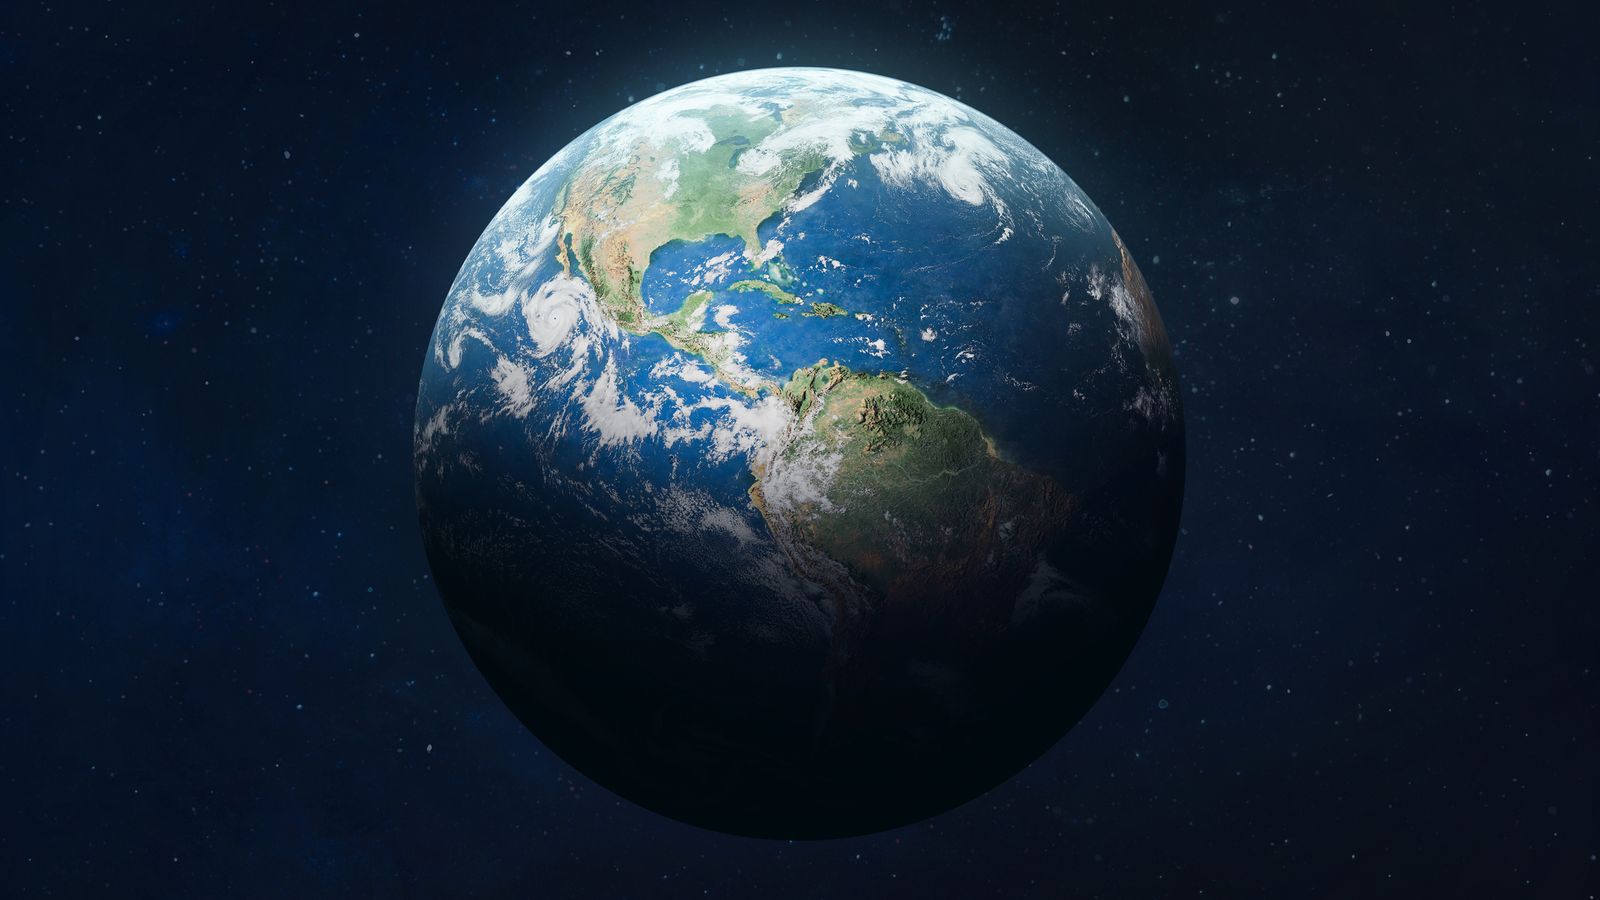 La Terre dépasse « l’espace opérationnel sûr pour l’humanité », selon une étude |  Actualités climatiques